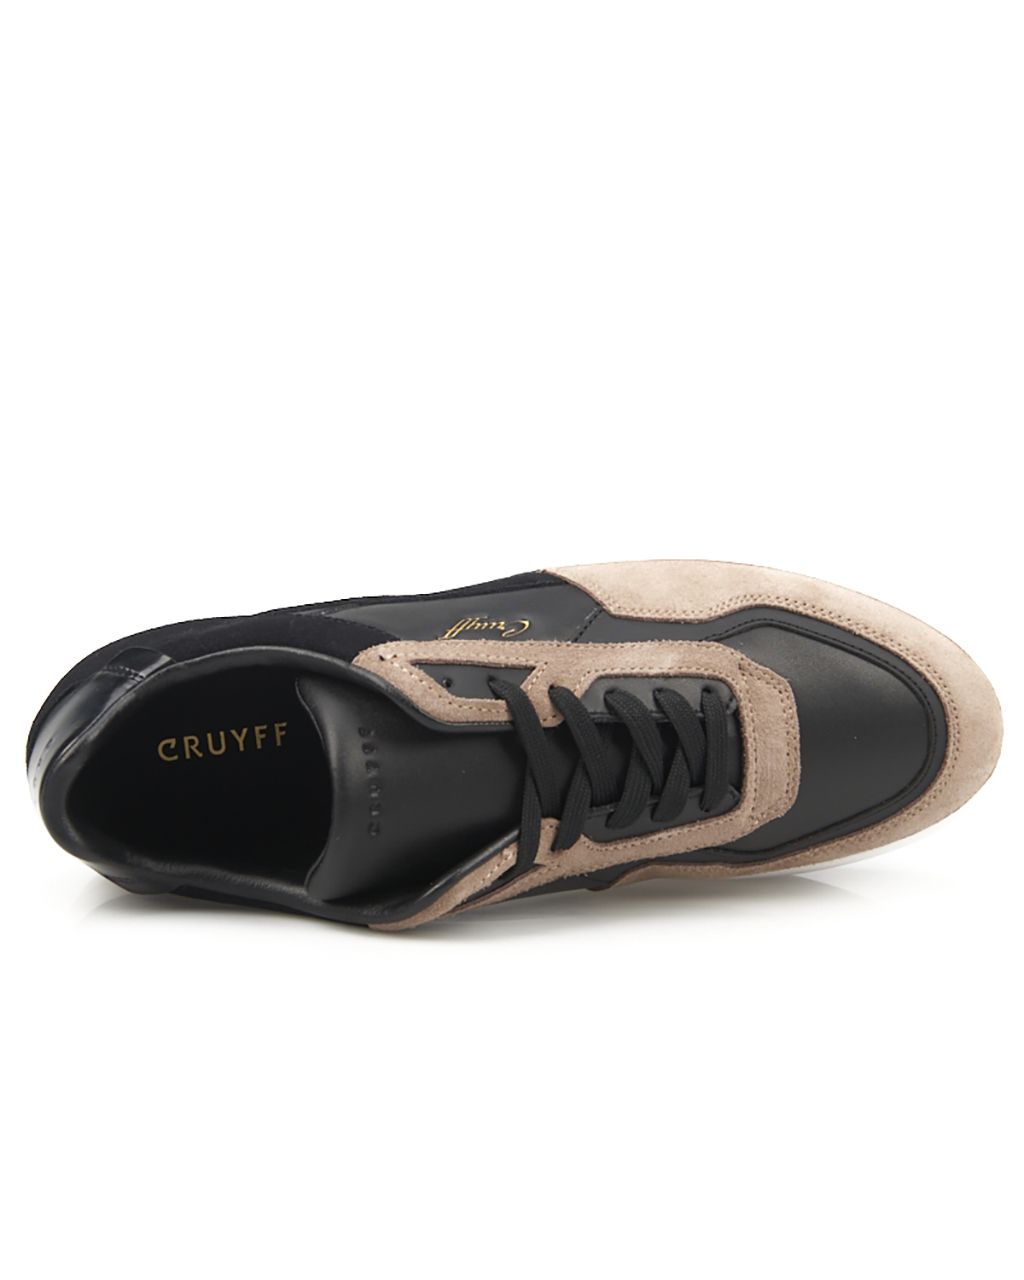 Cruyff Mosaic Sneakers Zwart 070998-001-40